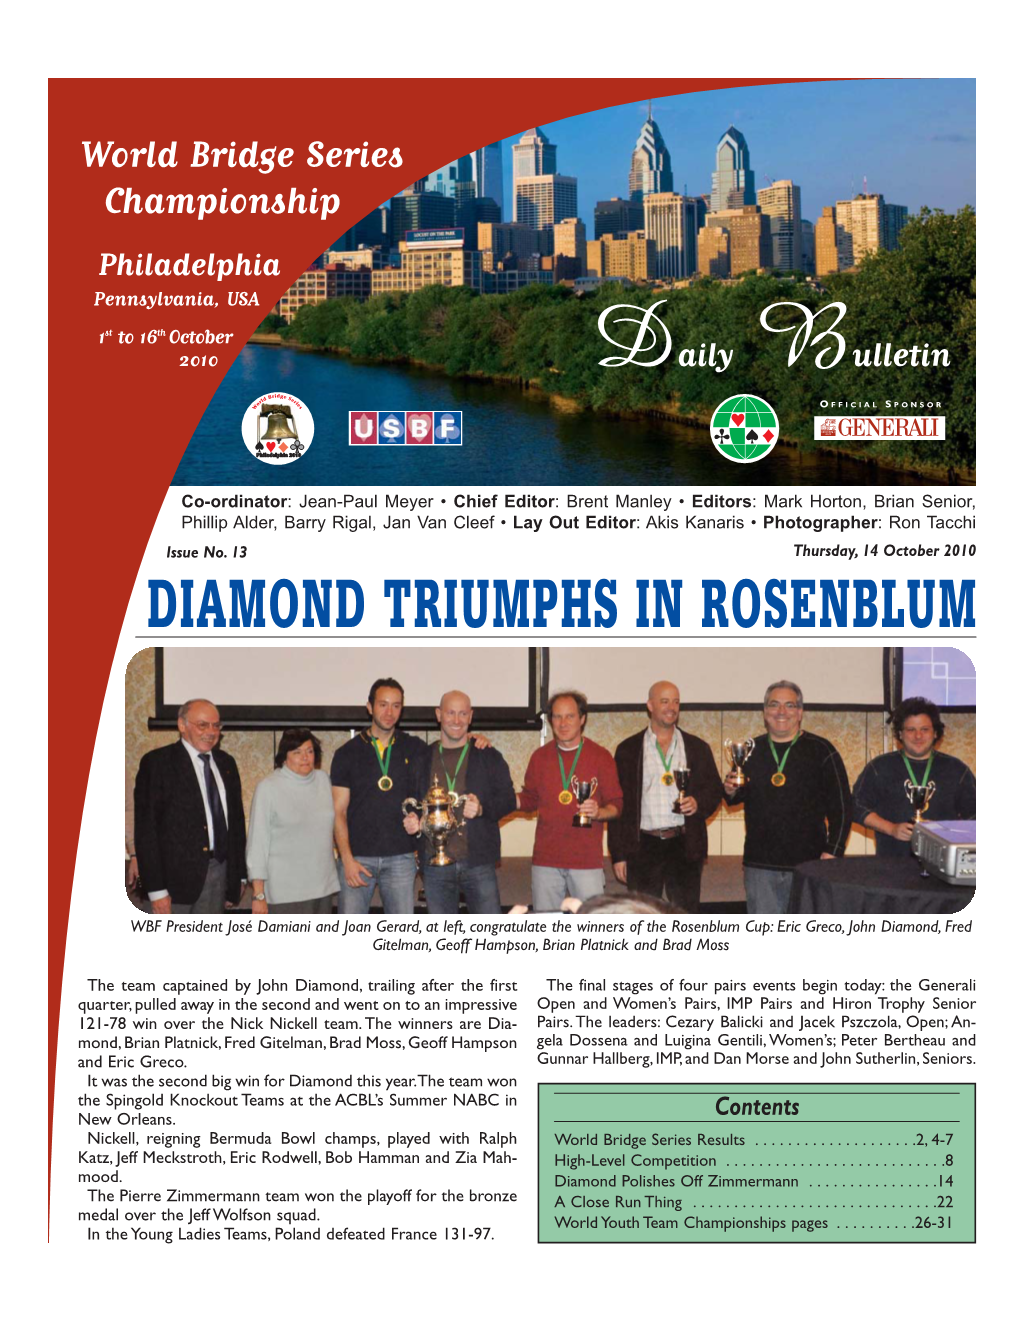 Diamond Triumphs in Rosenblum